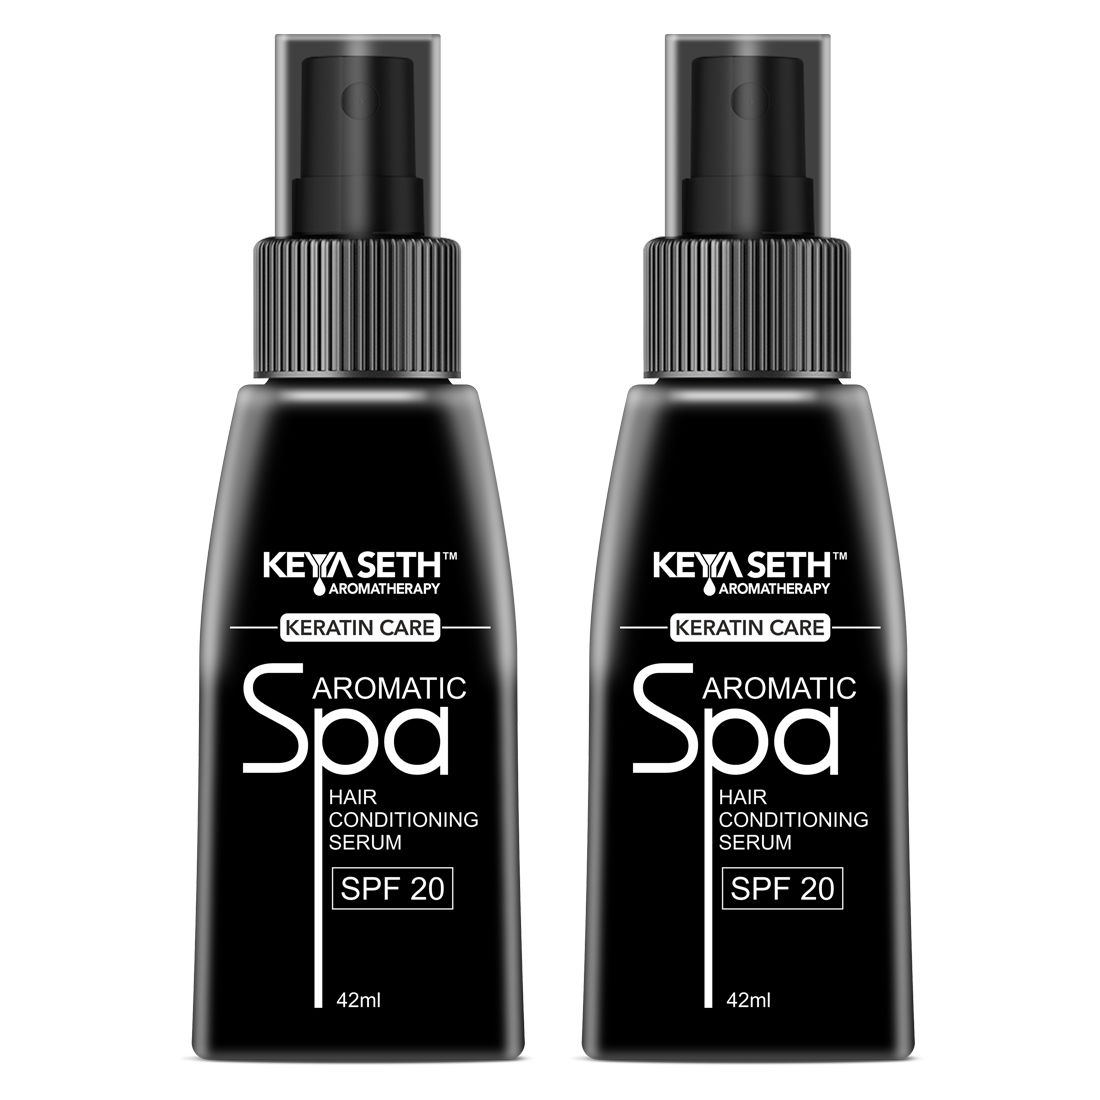 Share more than 130 keya seth hair spa